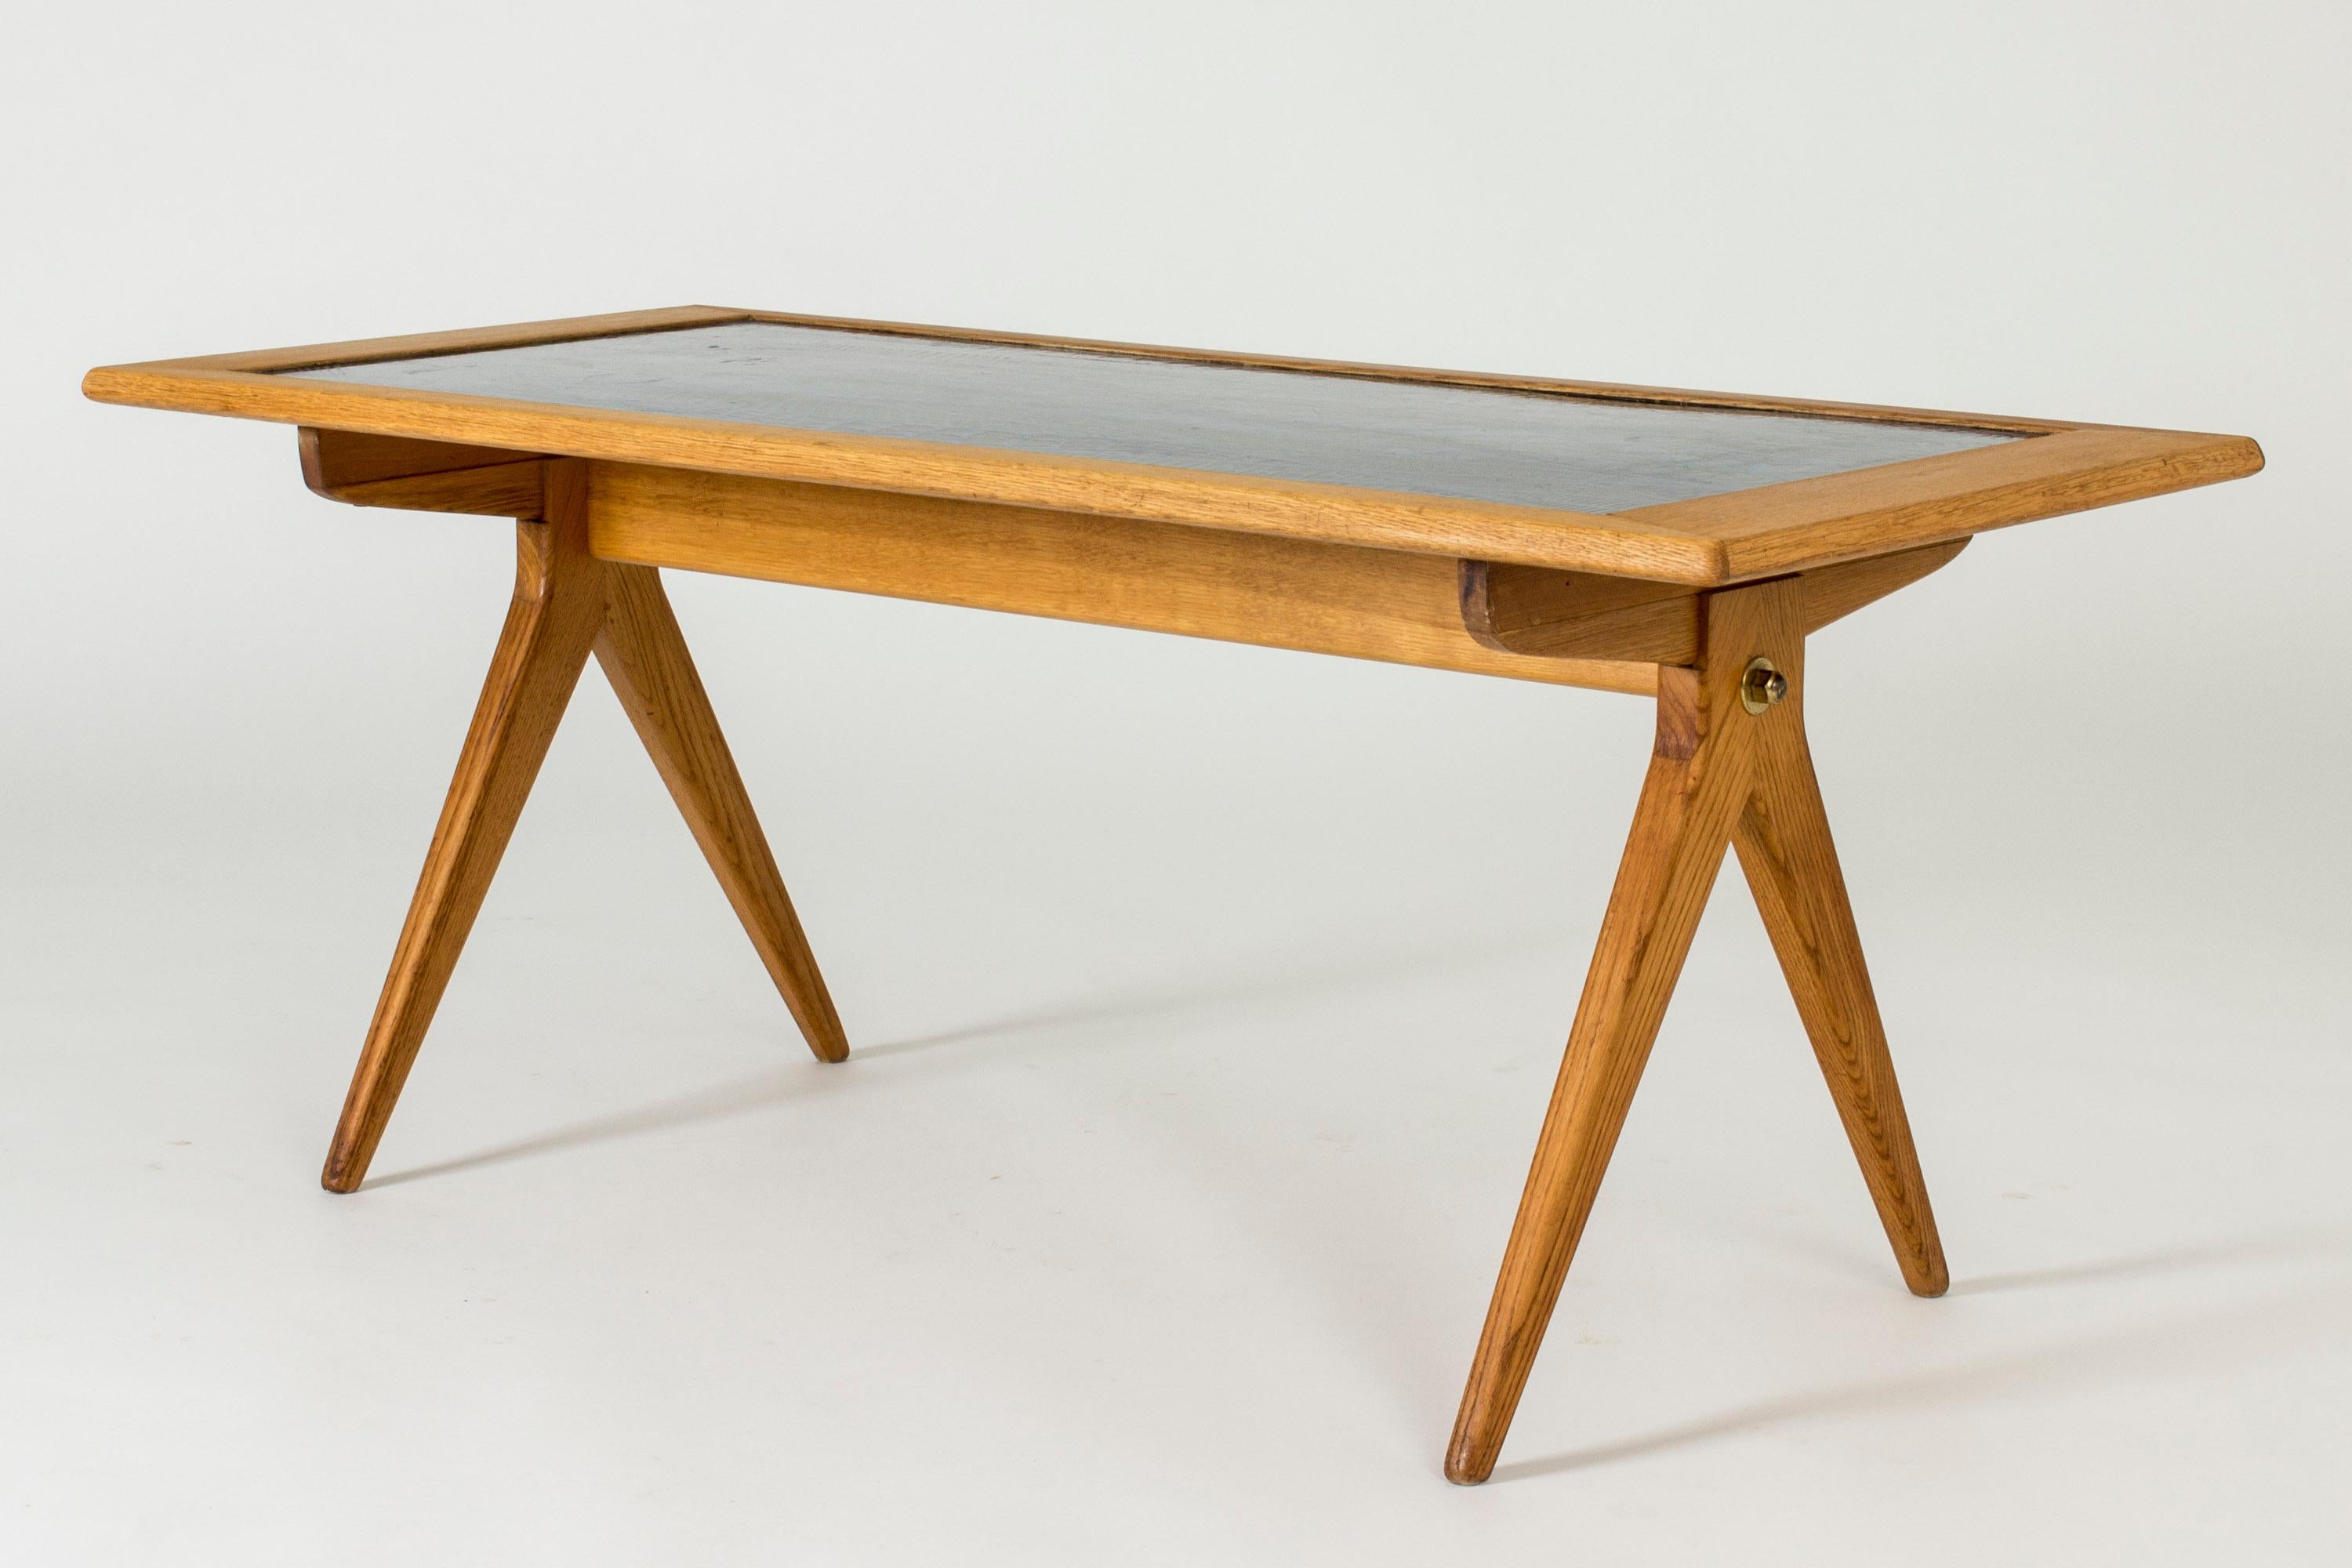 Table basse de Stig Lindberg, conçue pour NK. Remarquable plateau de table en émail avec un motif ondulé sous-marin, dans un élégant cadre en chêne.